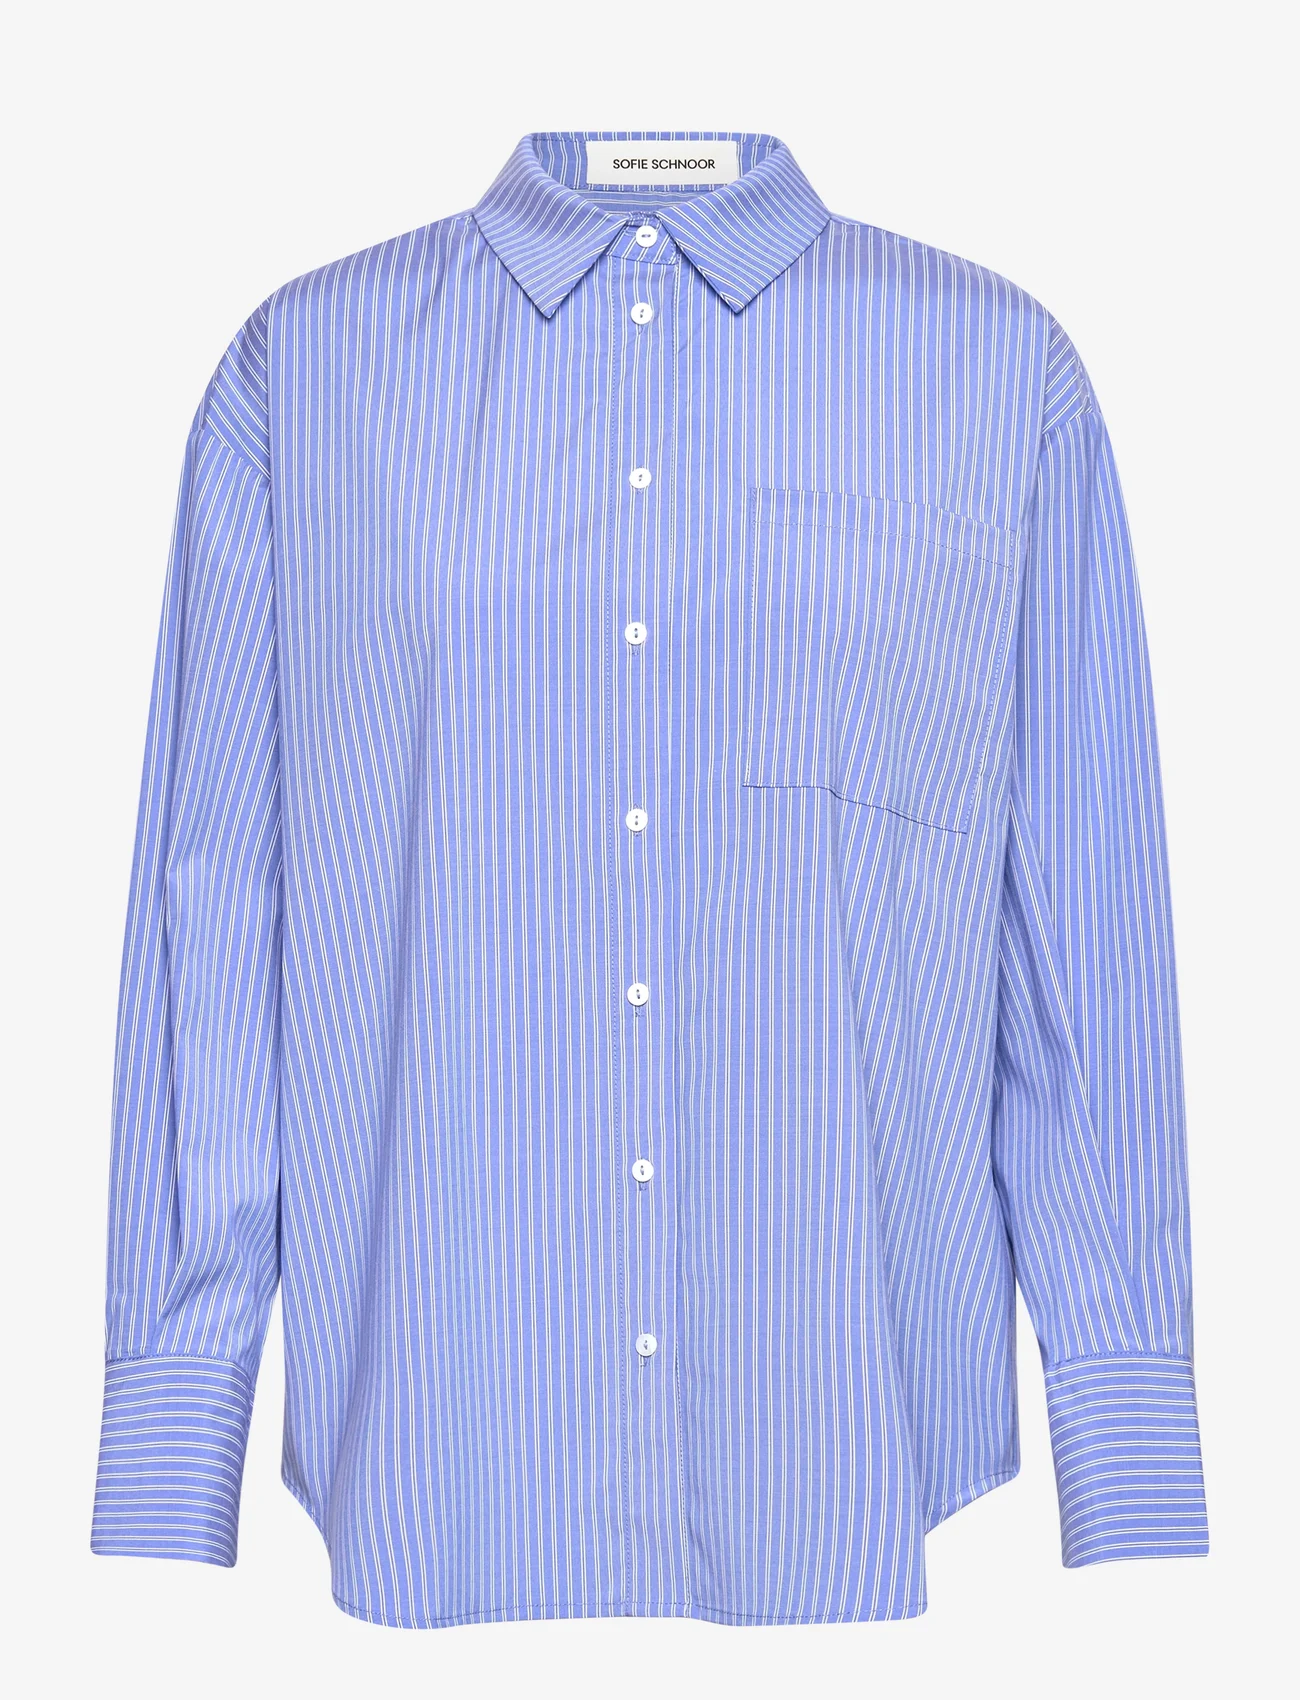 Sofie Schnoor - Shirt - pitkähihaiset paidat - blue striped - 0